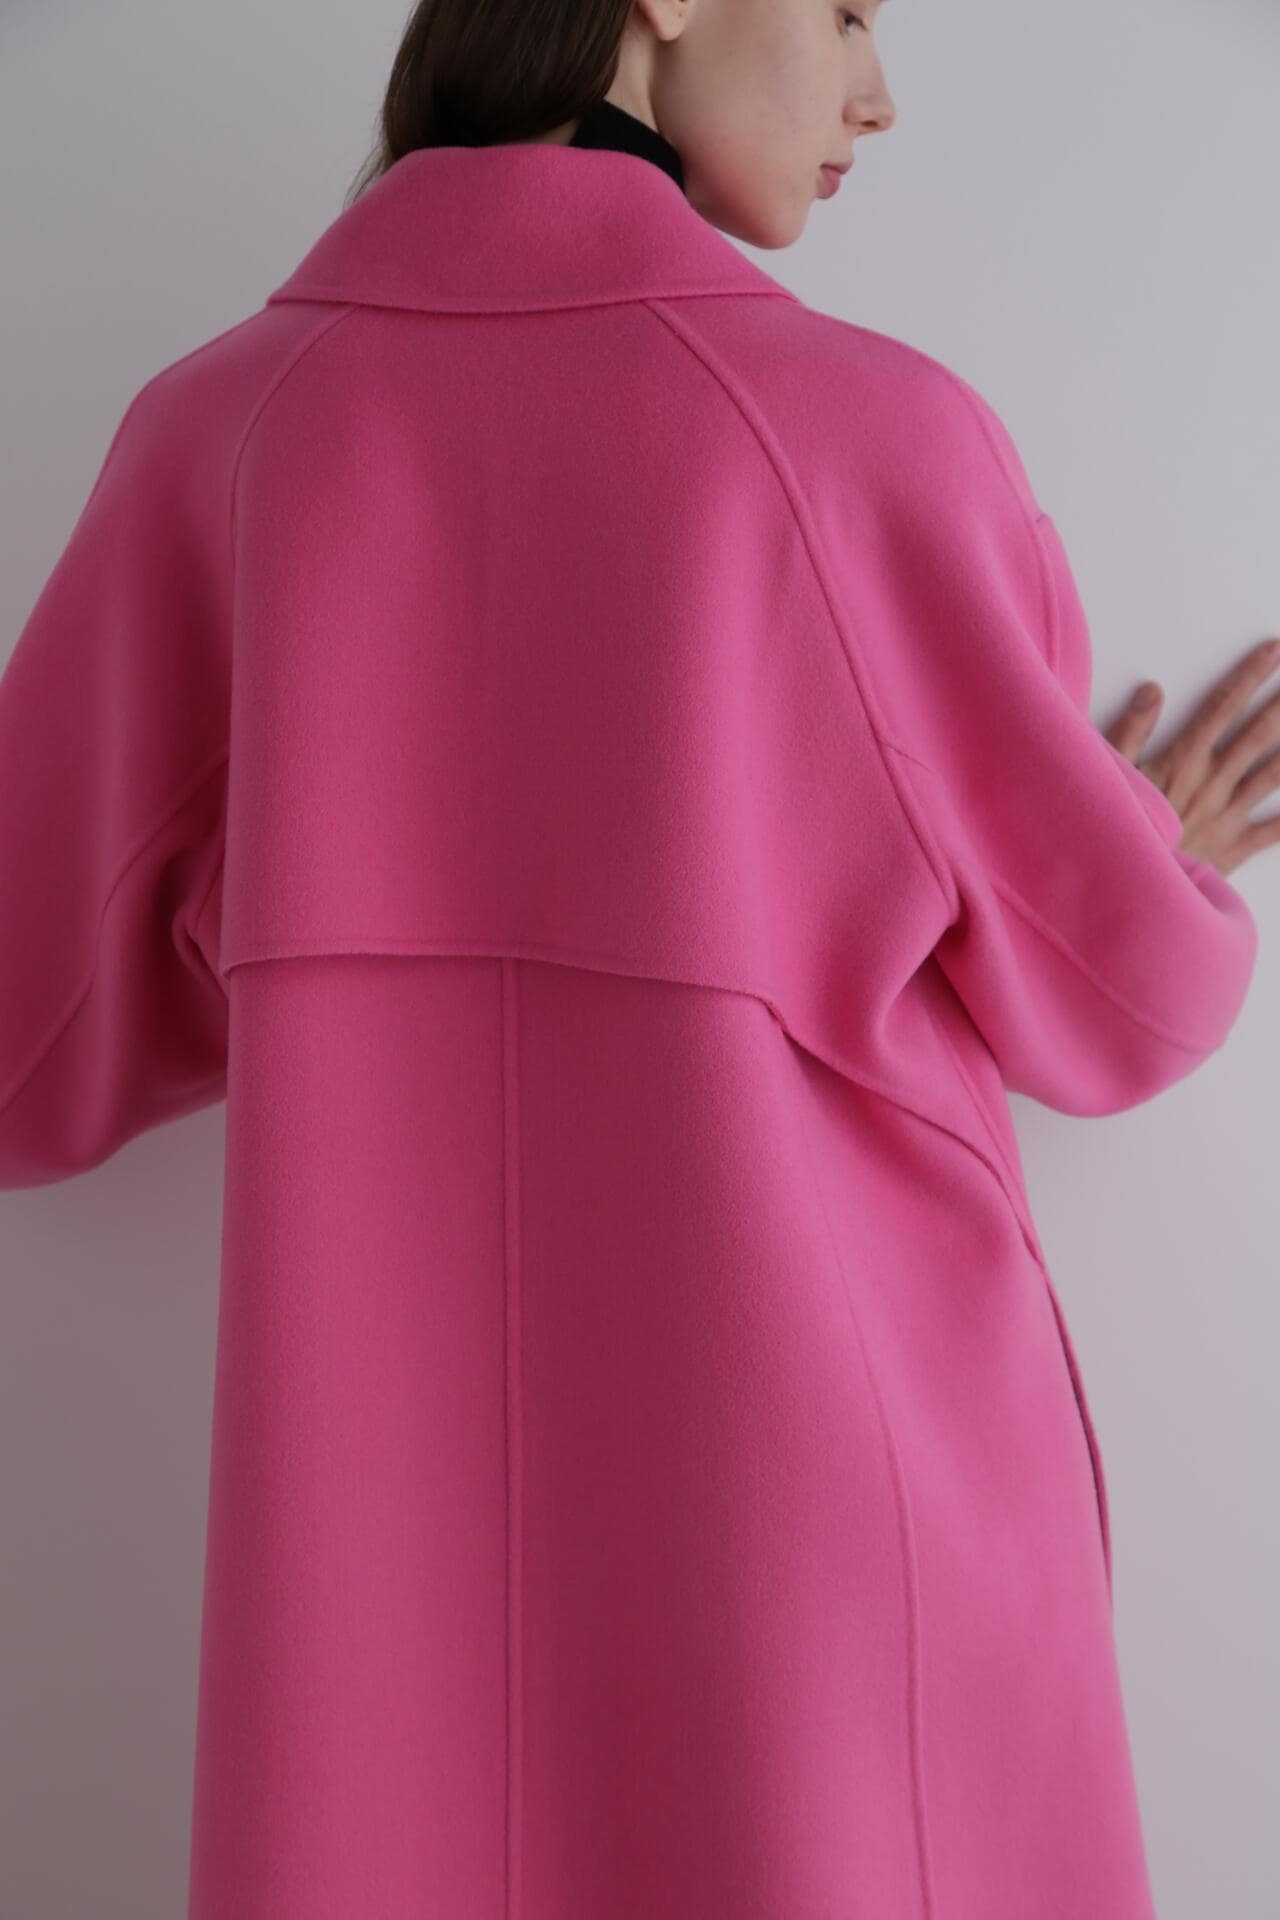 ◉2/29出品最終日◉【LE PHIL】ルフィル今期完売　ピンク色コート新品同様とは異なりますため